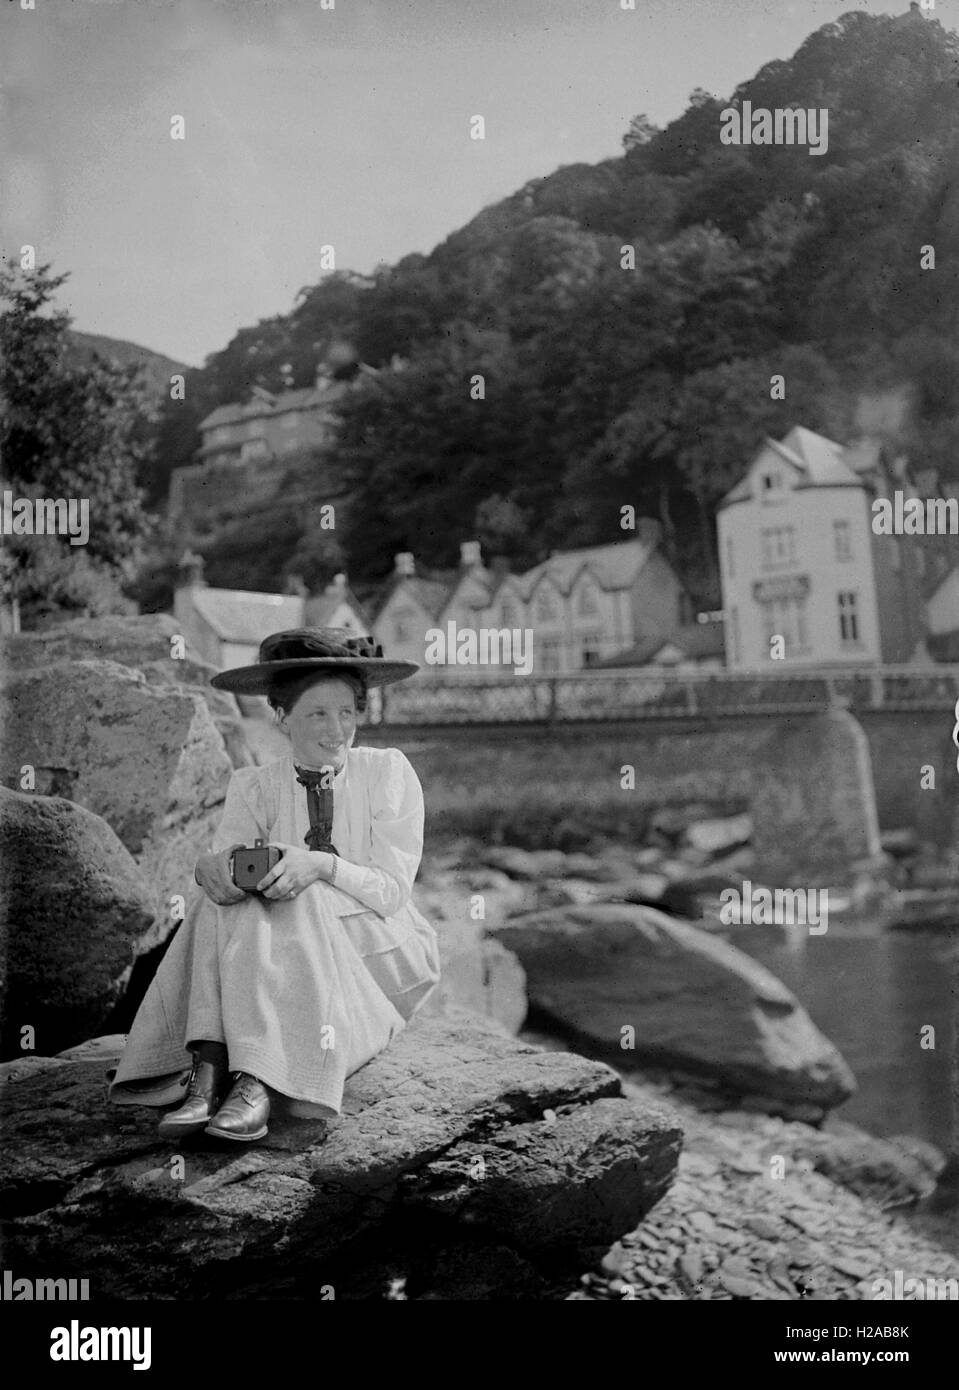 Une jeune femme habillée impeccablement pose pour une photographie tenant une boîte Kodak Brownie 1901 No1 Appareil Photo. Plaque de verre à partir de l'image originale c1900. Photo par Tony Henshaw Banque D'Images